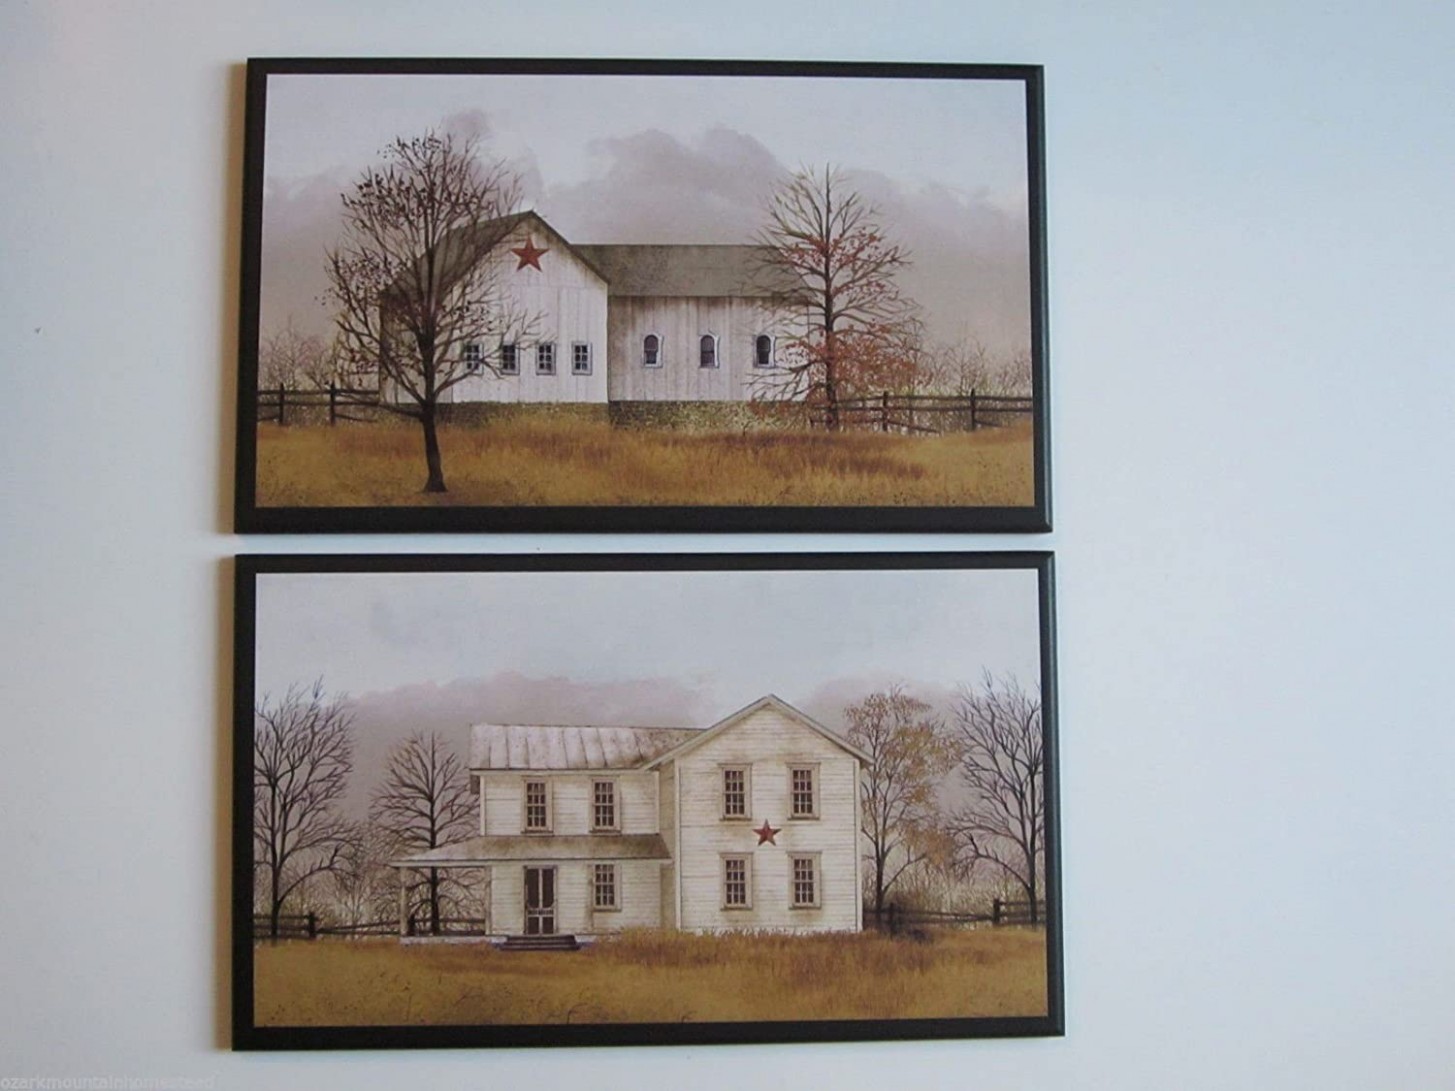 Amazon.com: Farmhouse Plaques, 5 Piece Set Wall Decor Pictures ..